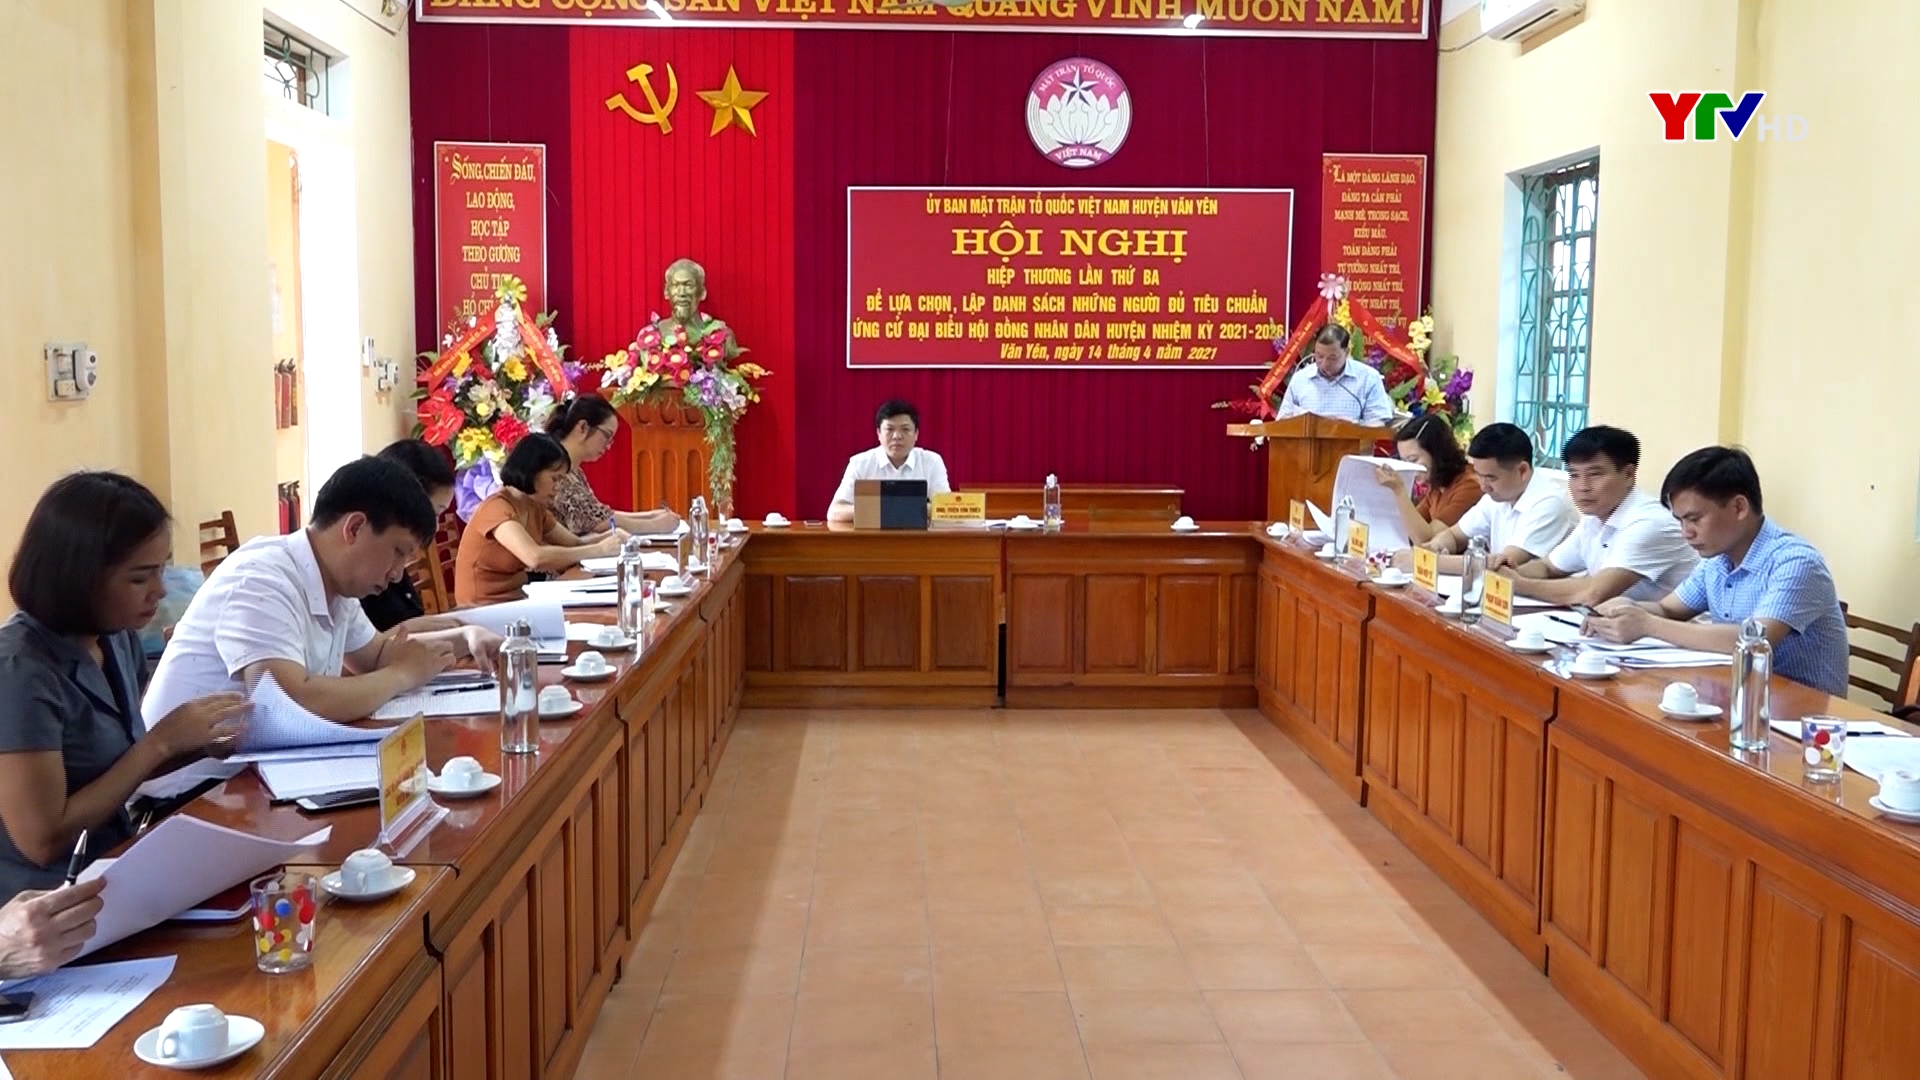 Ủy ban MTTQ huyện Văn Yên tổ chức Hội nghị hiệp thương lần thứ 3